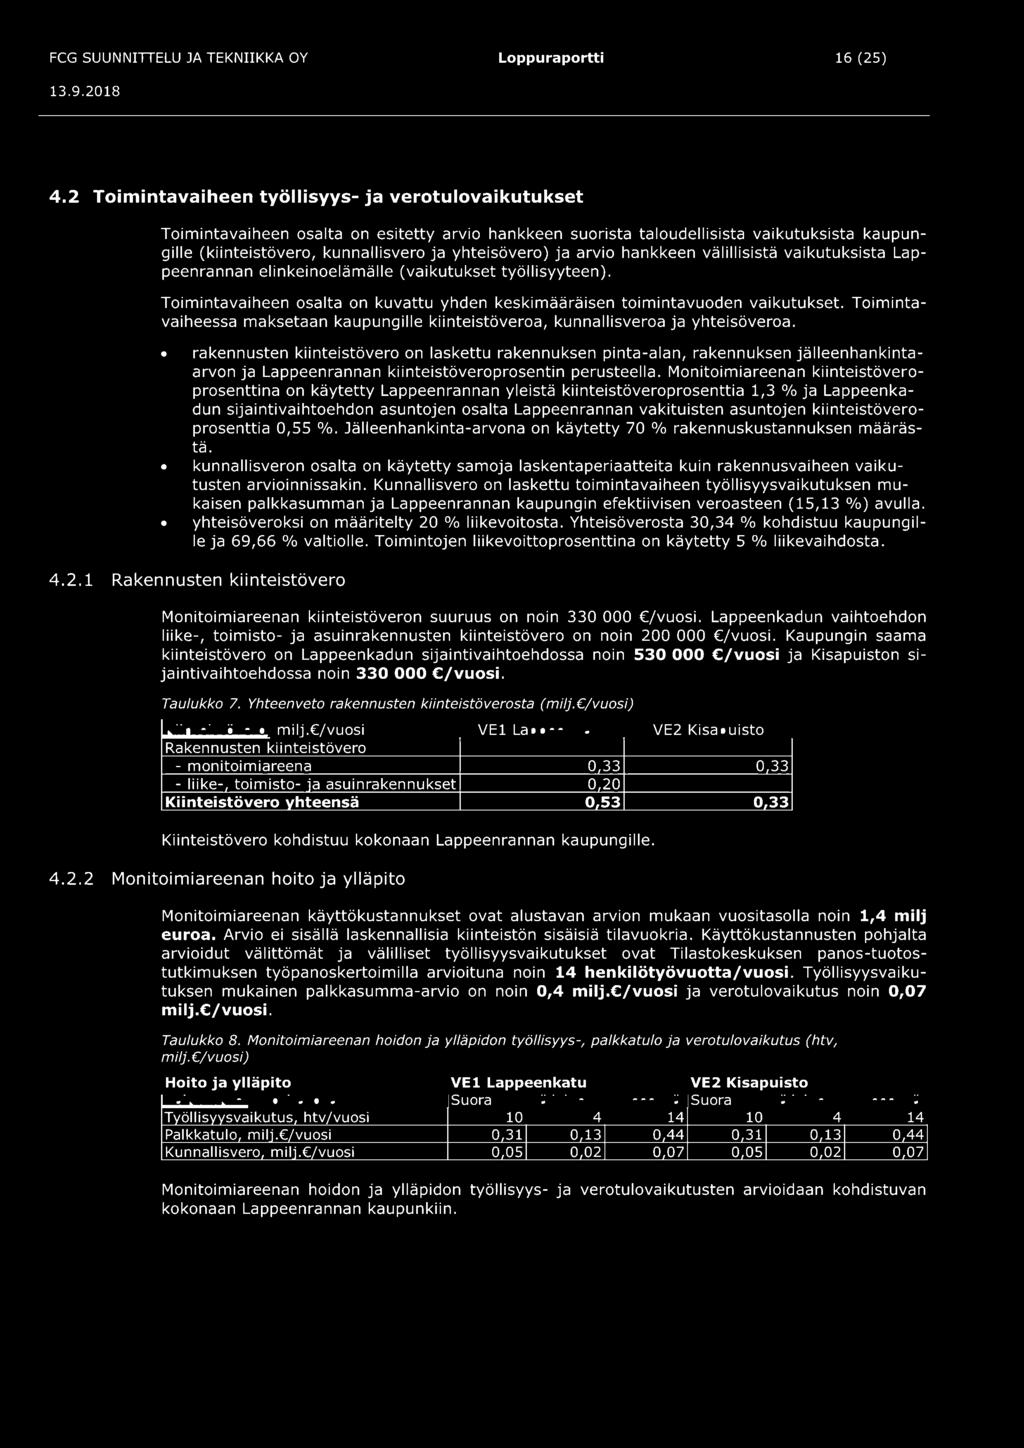 yhteisövero) ja arvio hankkeen välillisistä vaikutuksista Lappeenrannan elinkeinoelämälle (vaikutukset työllisyyteen).